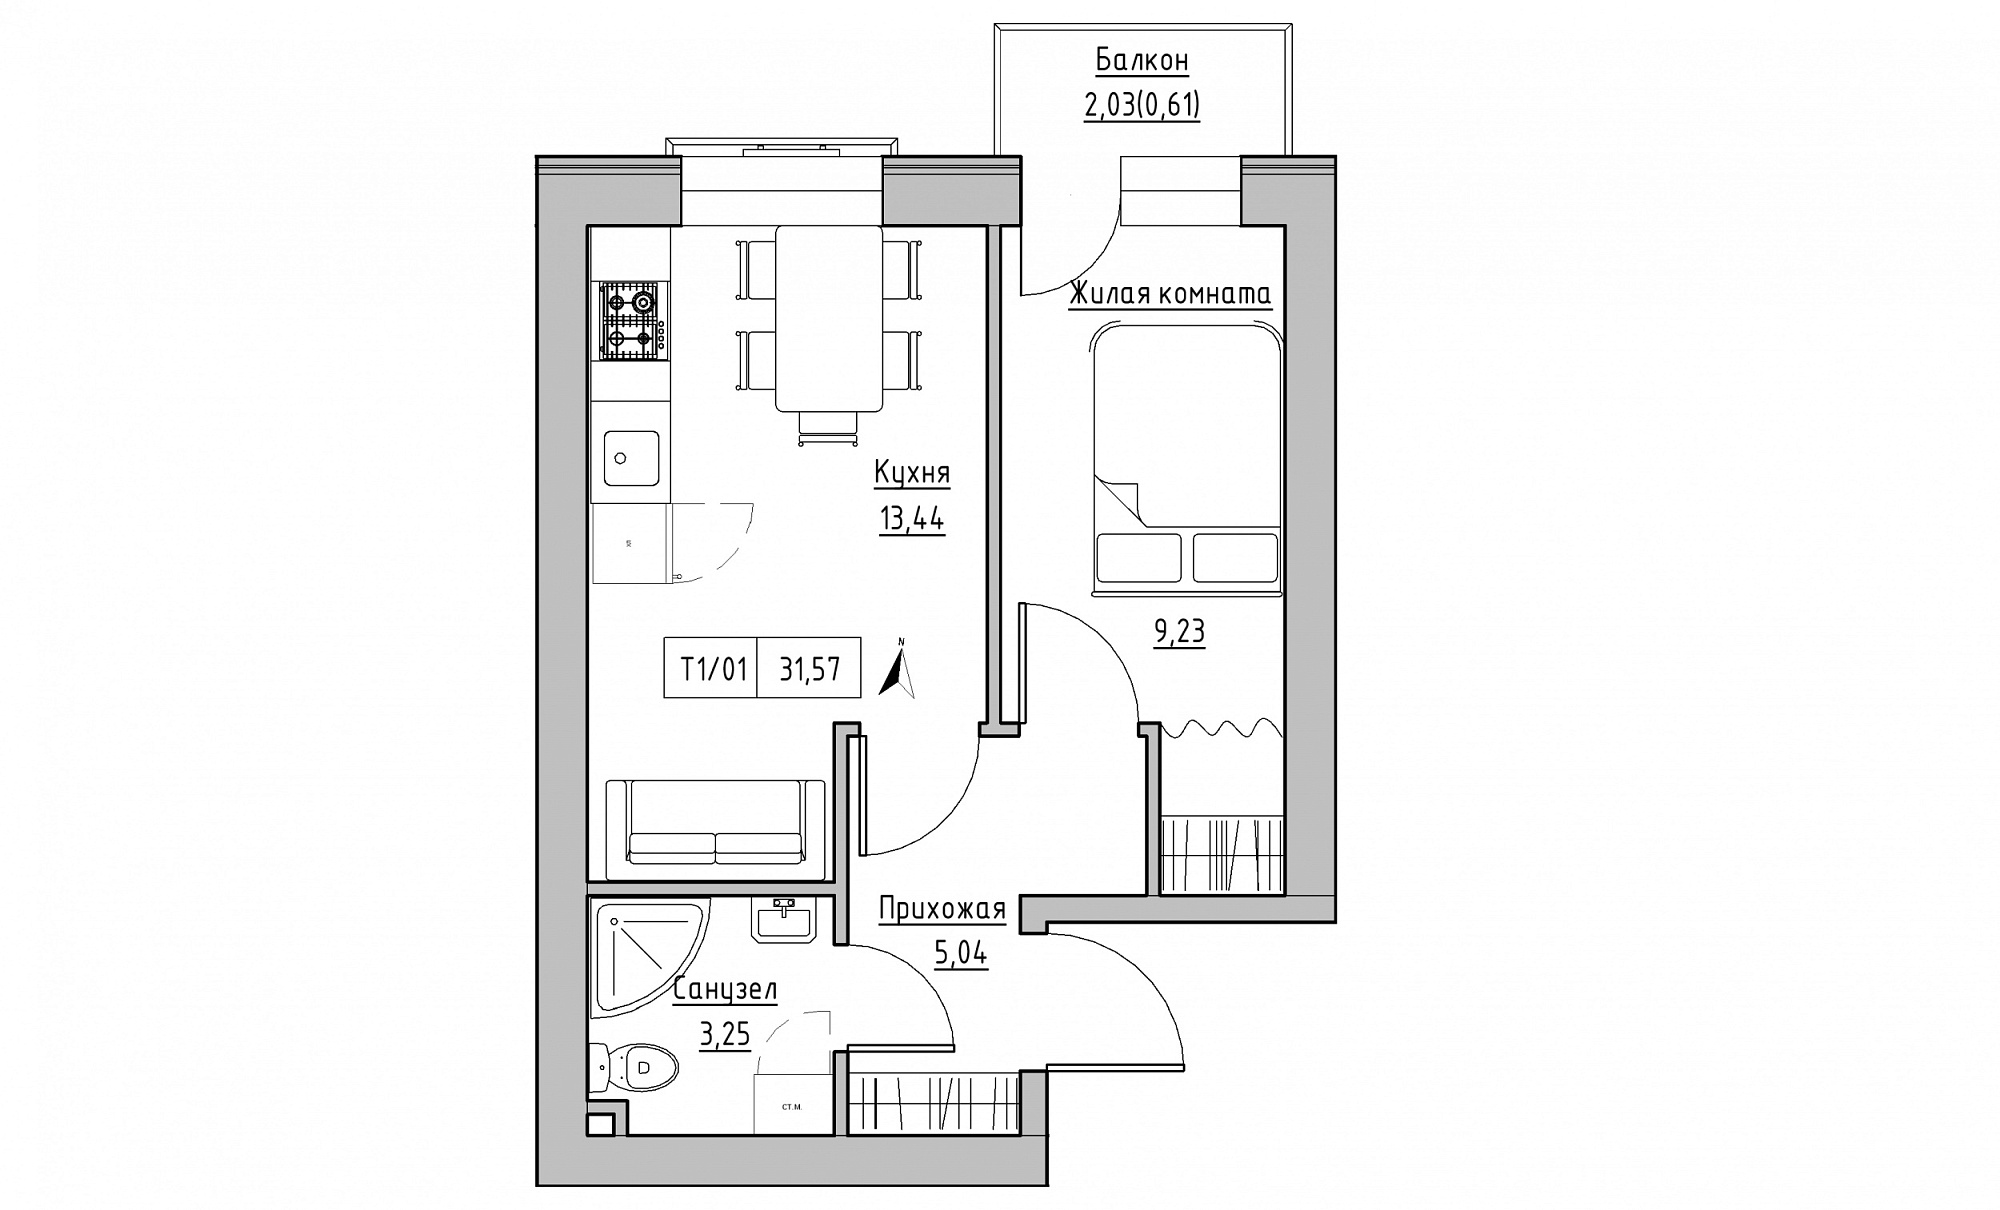 Планування 1-к квартира площею 31.57м2, KS-015-02/0013.